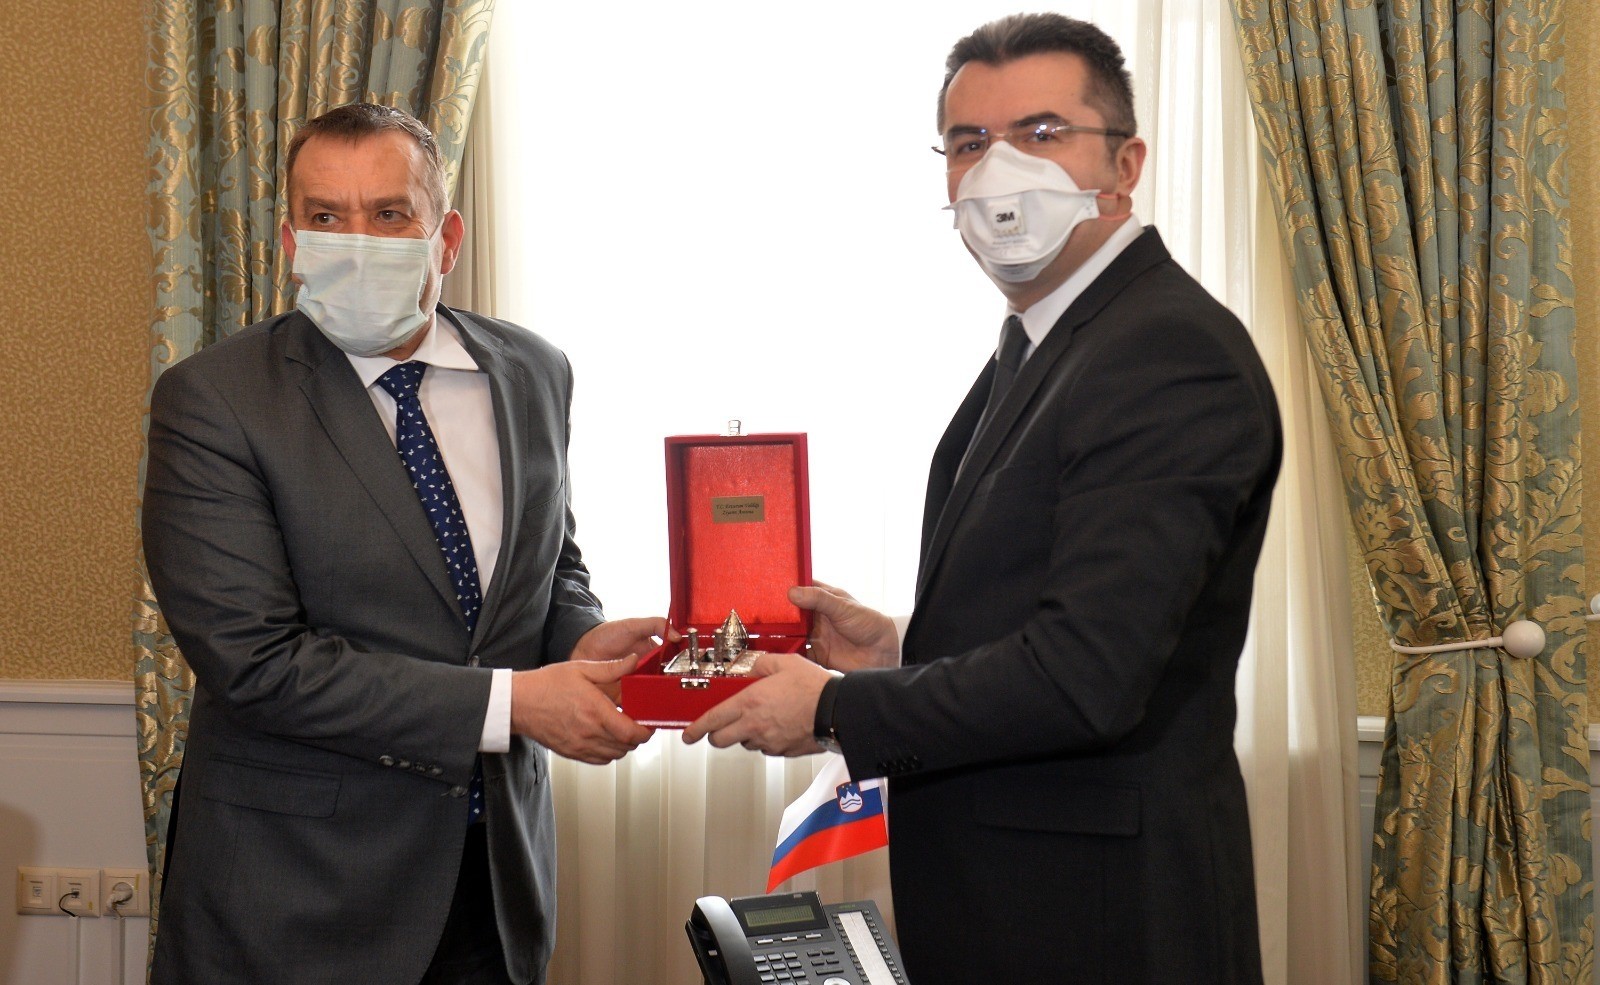 Slovenya Cumhuriyeti Büyükelçisi Seligo, Vali Memiş'i ziyaret etti -  Erzurum Haberleri